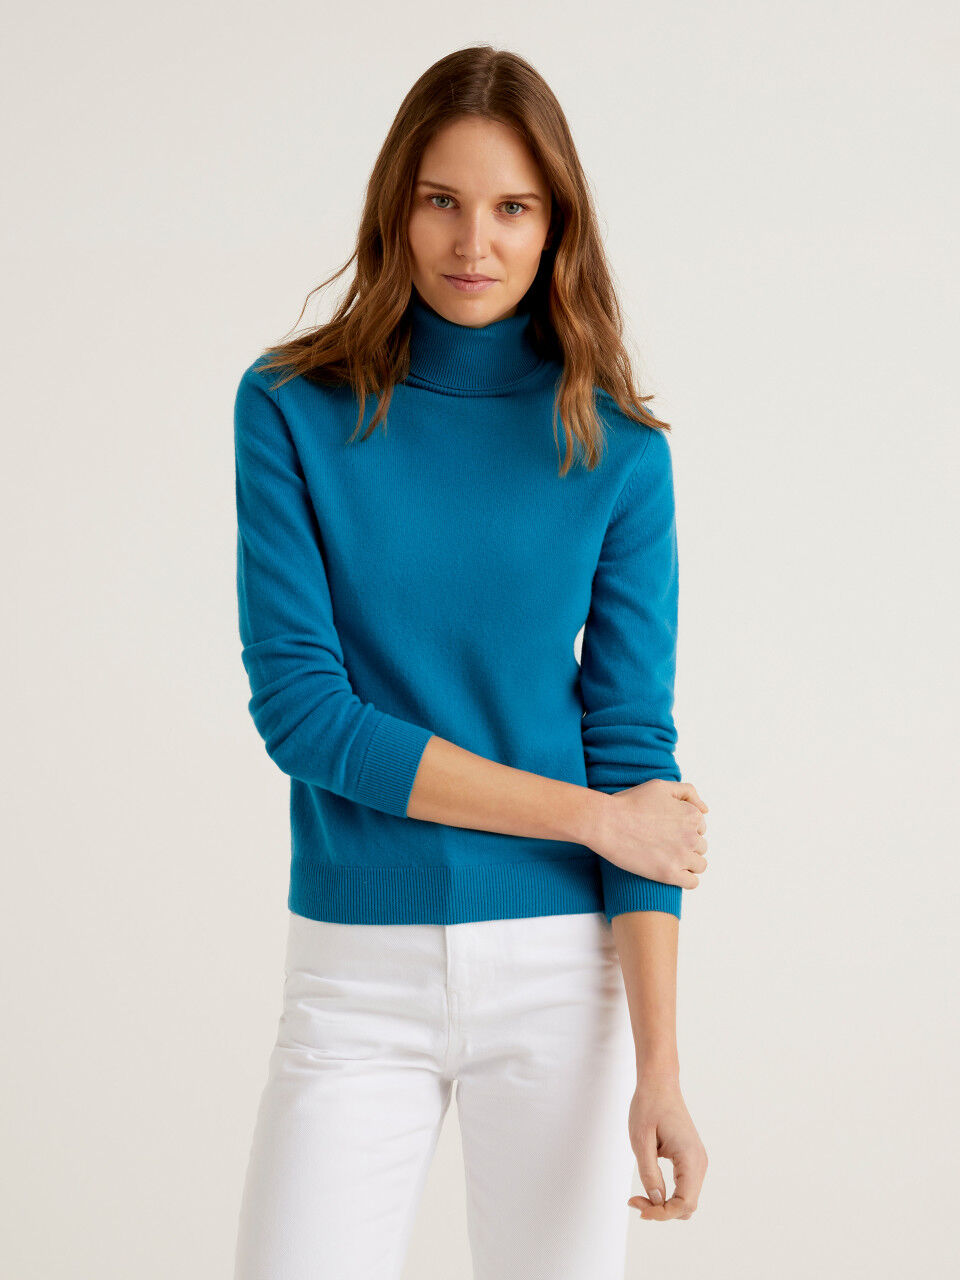 Teal turtleneck sweater in pure Merino wool customizable